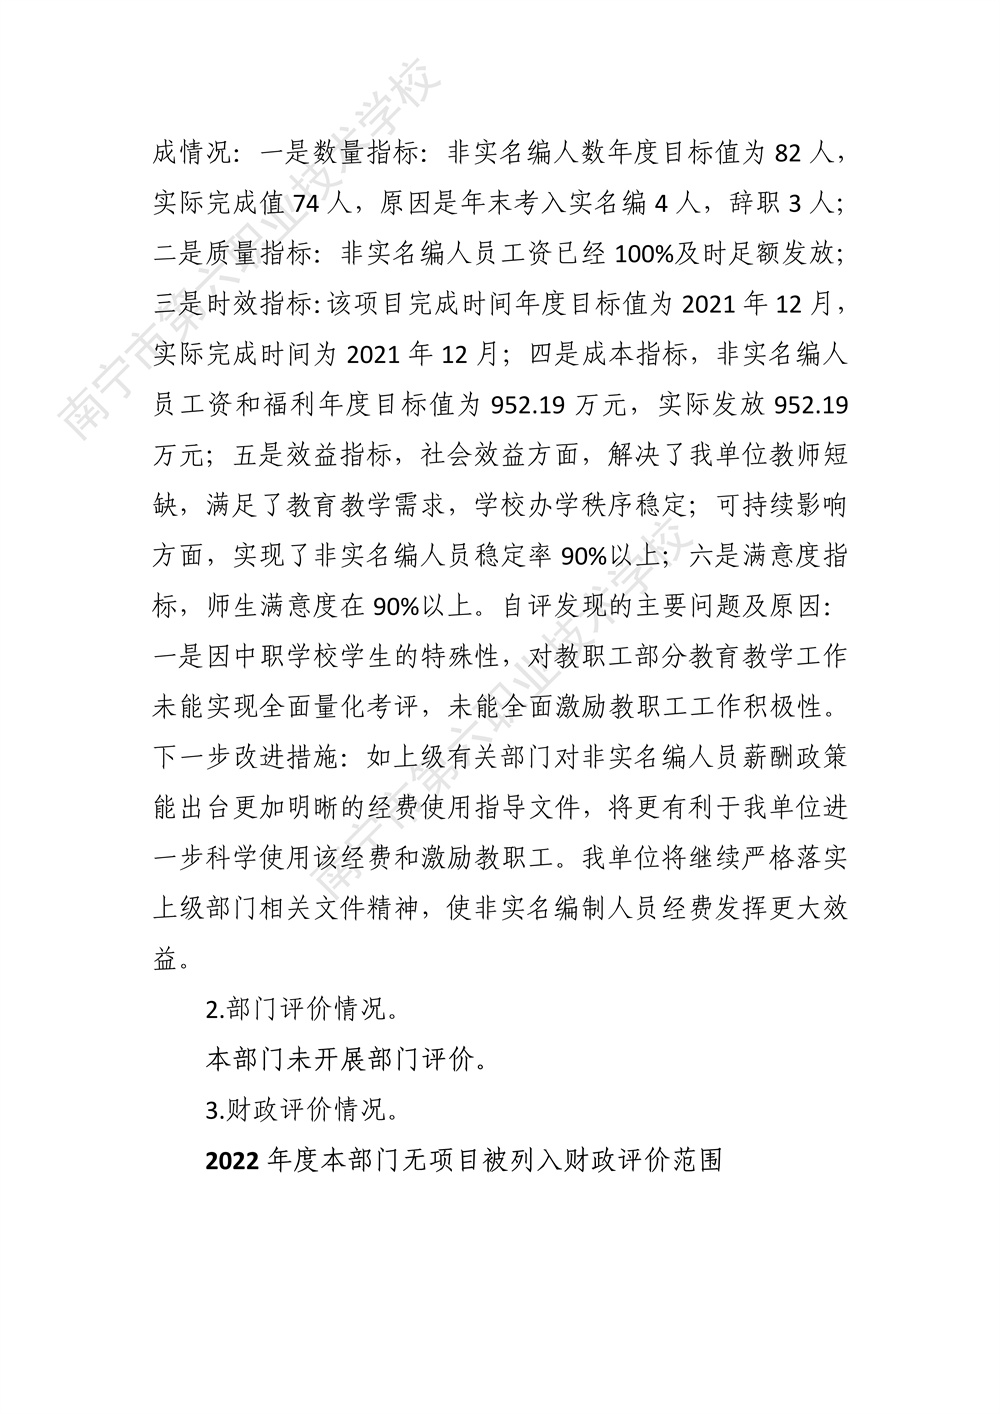 南宁市第六职业技术学校2022年度部门决算公开（终版）_36.jpg